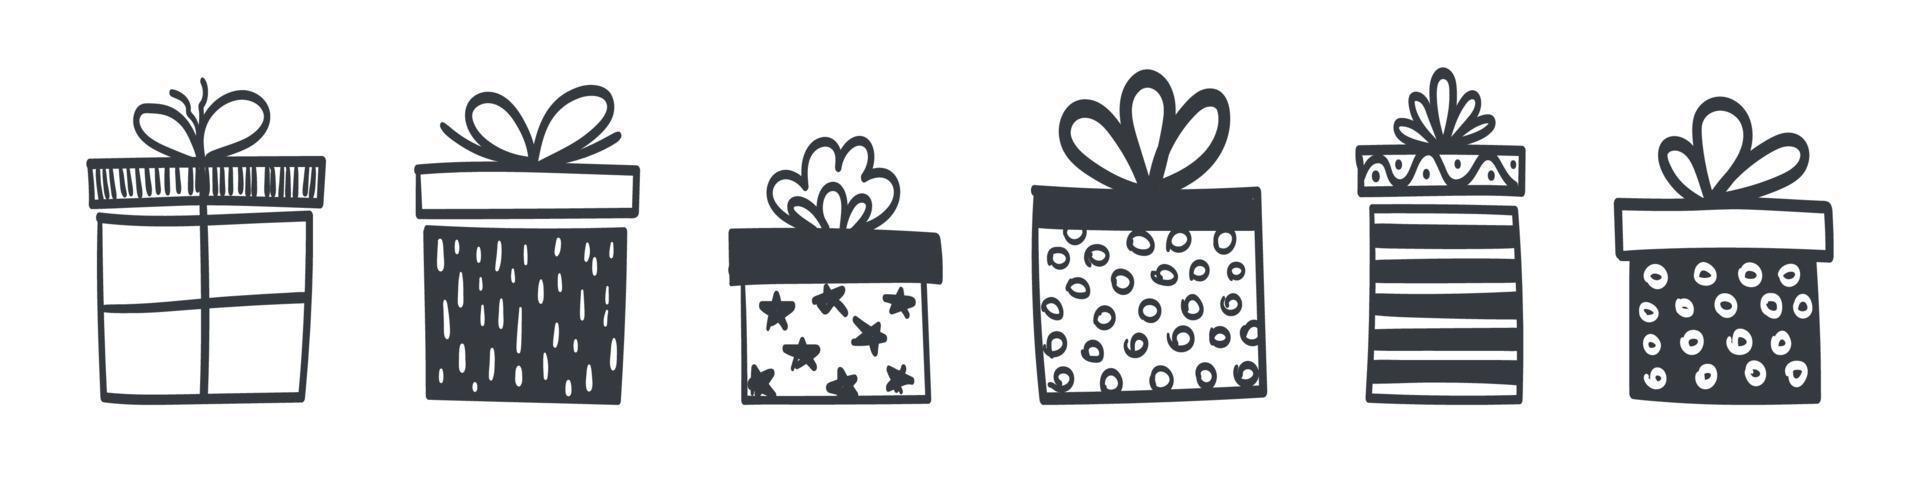 iconos de caja de regalo. conjunto de cajas de regalo dibujadas a mano de diferentes estilos y formas. ilustración vectorial vector